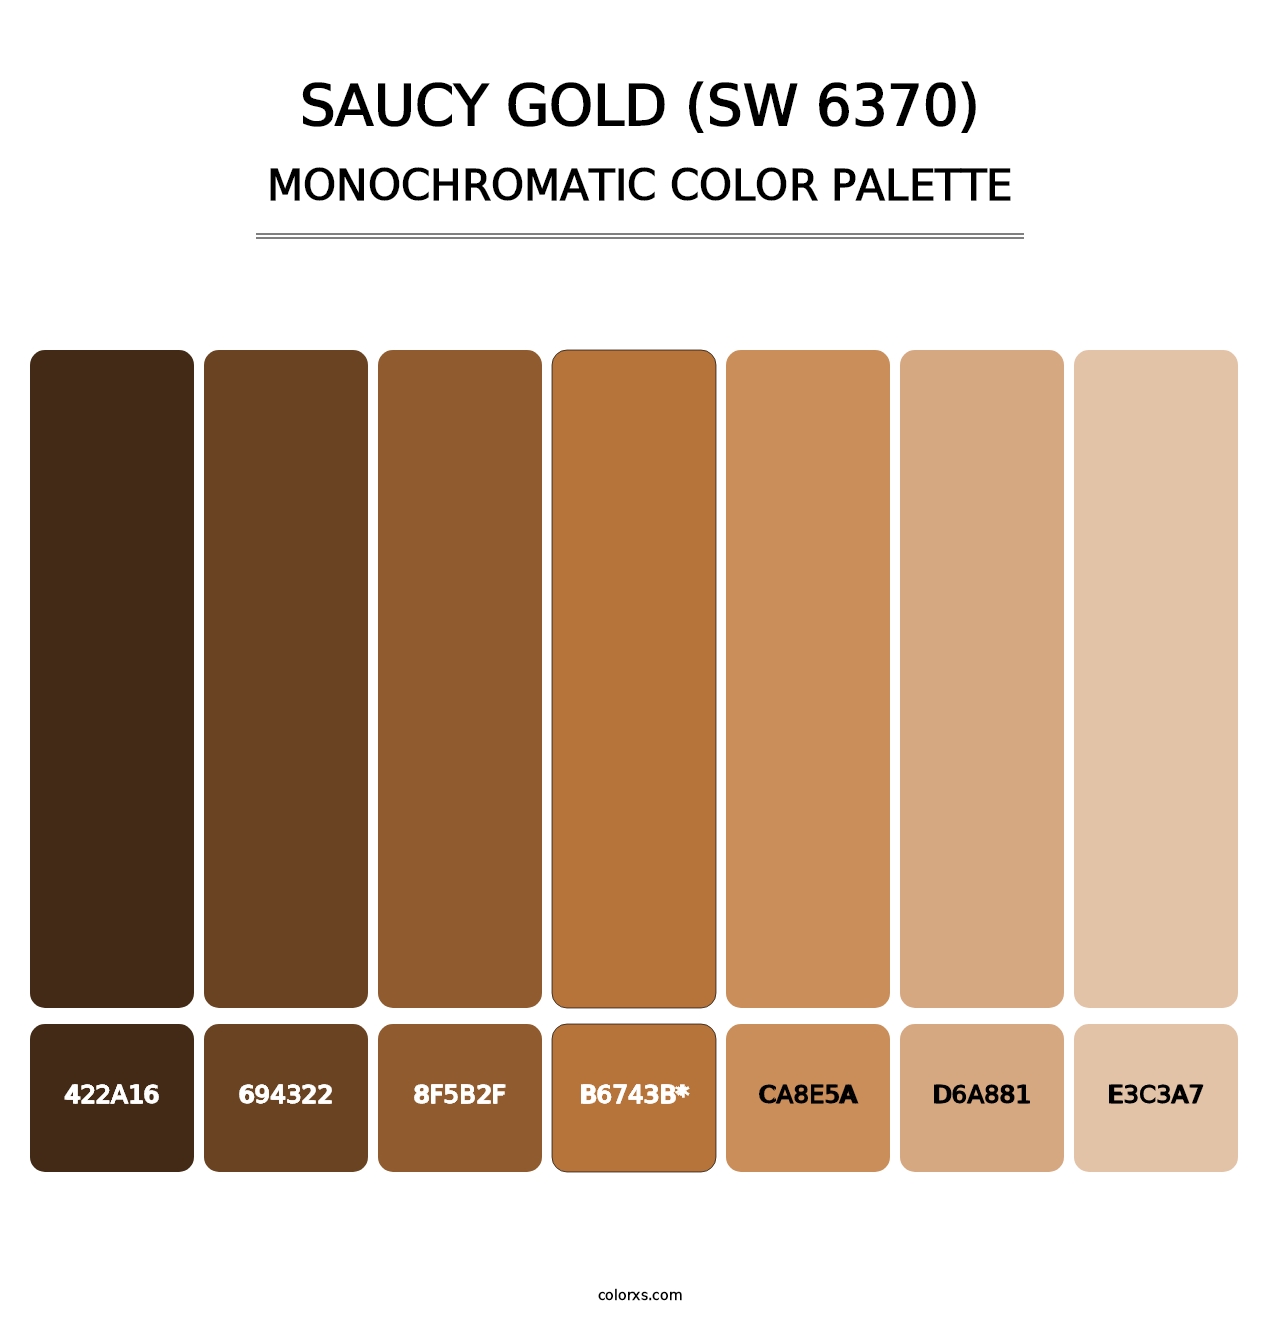 Saucy Gold (SW 6370) - Monochromatic Color Palette